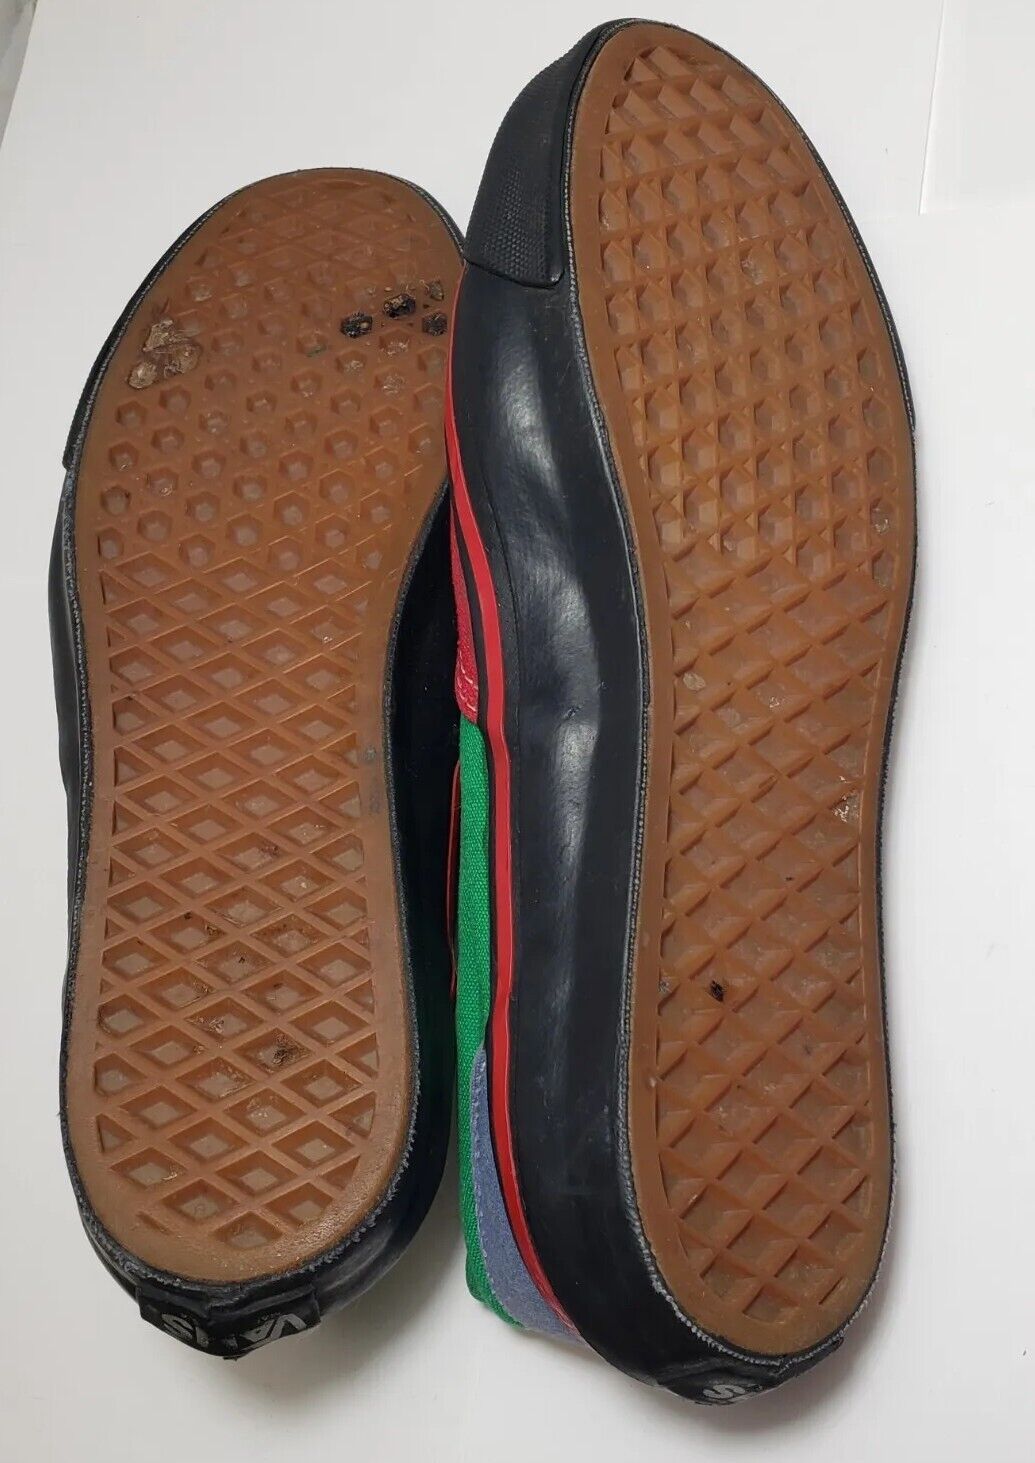 RASTA Vans Low Cut Sneakers Shoe 1990 Reggae Colo… - image 8